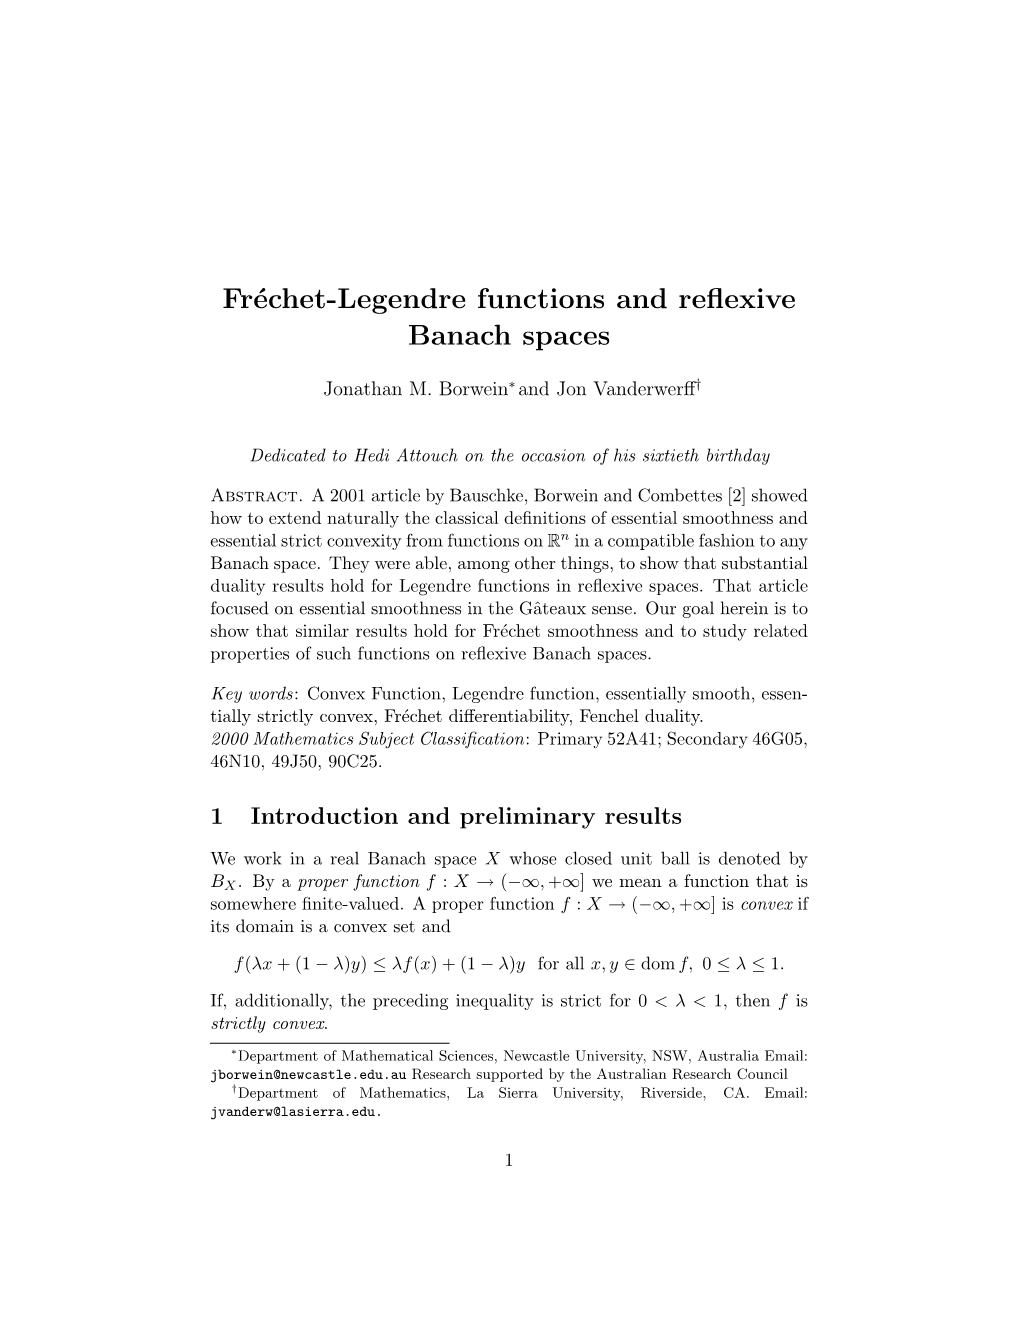 Fréchet-Legendre Functions and Reflexive Banach Spaces